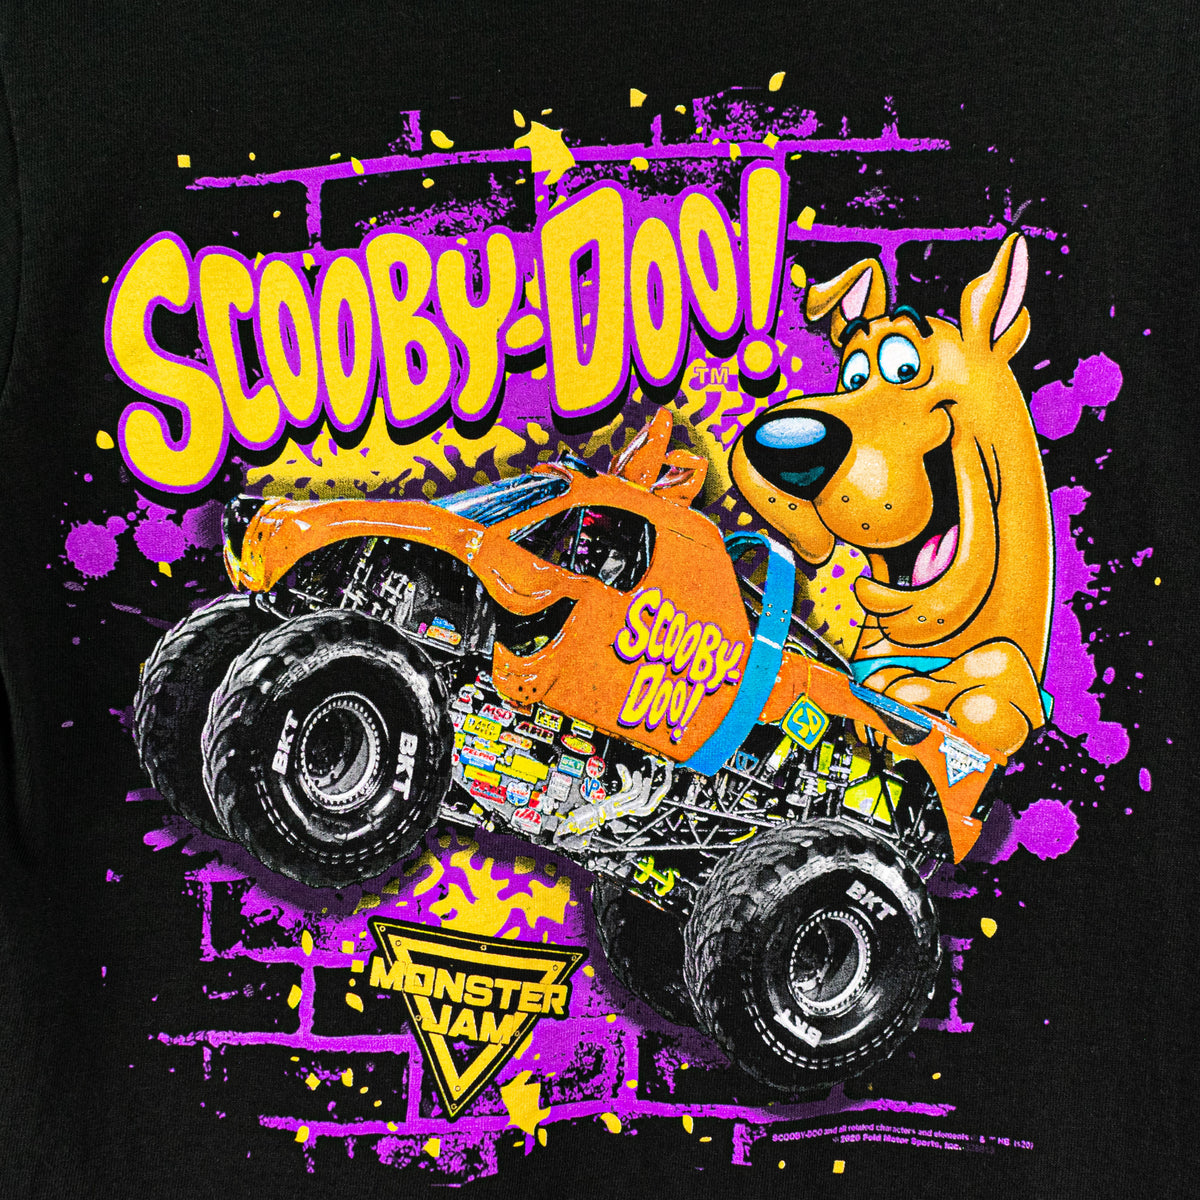 Scooby-Doo Monster Jam Truck